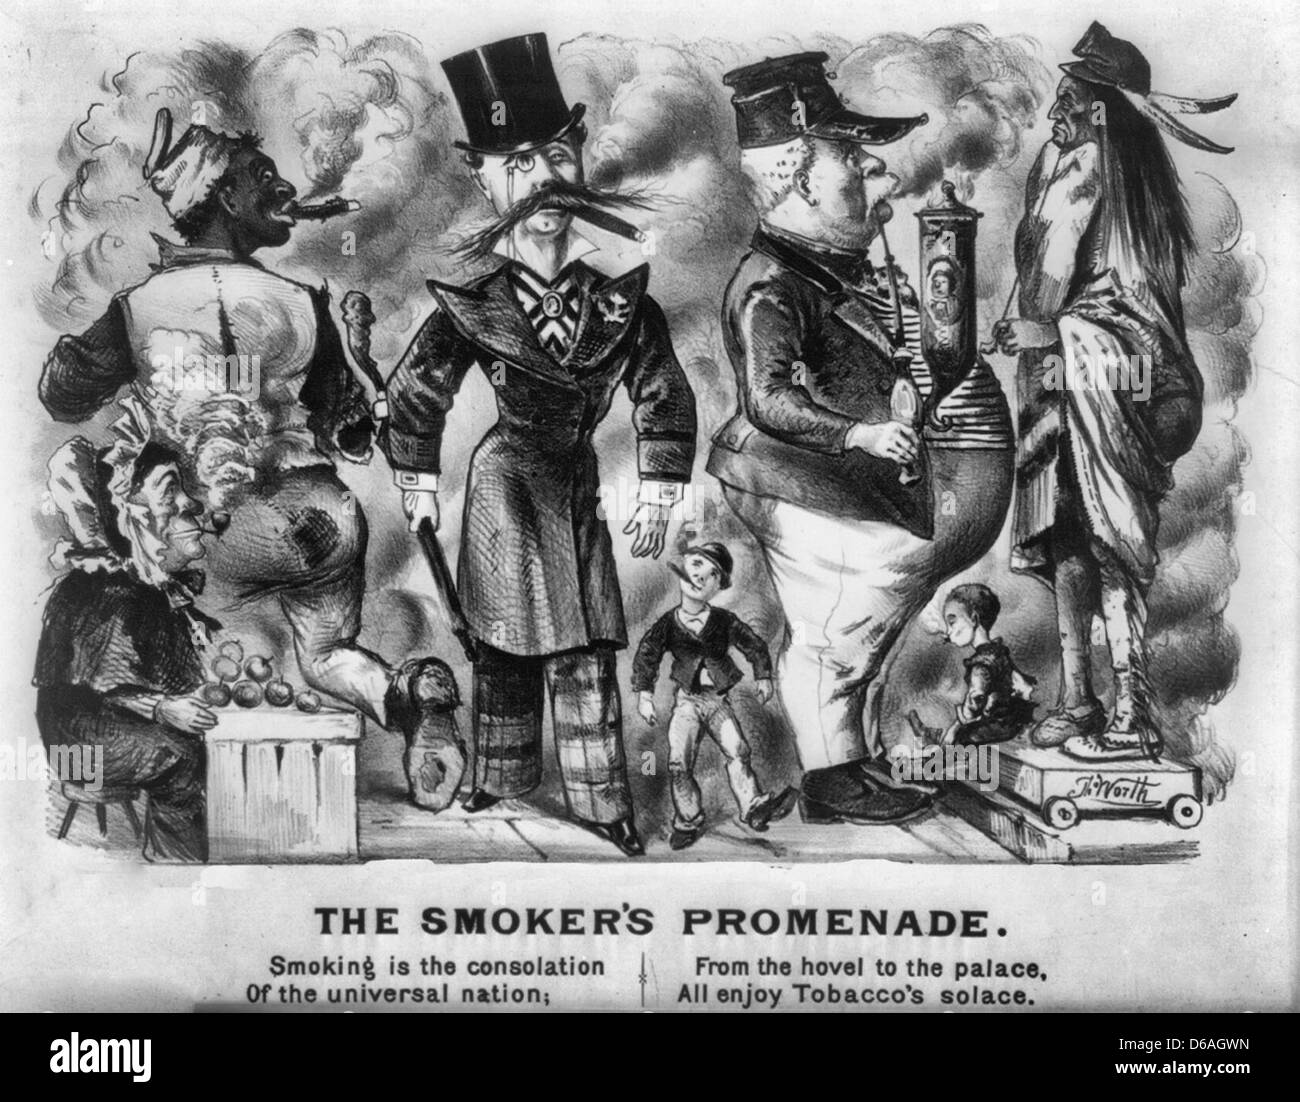 Die Raucher Promenade - Tabak n. Chr. ca. 1876. Rauchen ist der Trost der universal Nation.  Von der Hütte zum Palast genießen alle Tobacco Trost Stockfoto